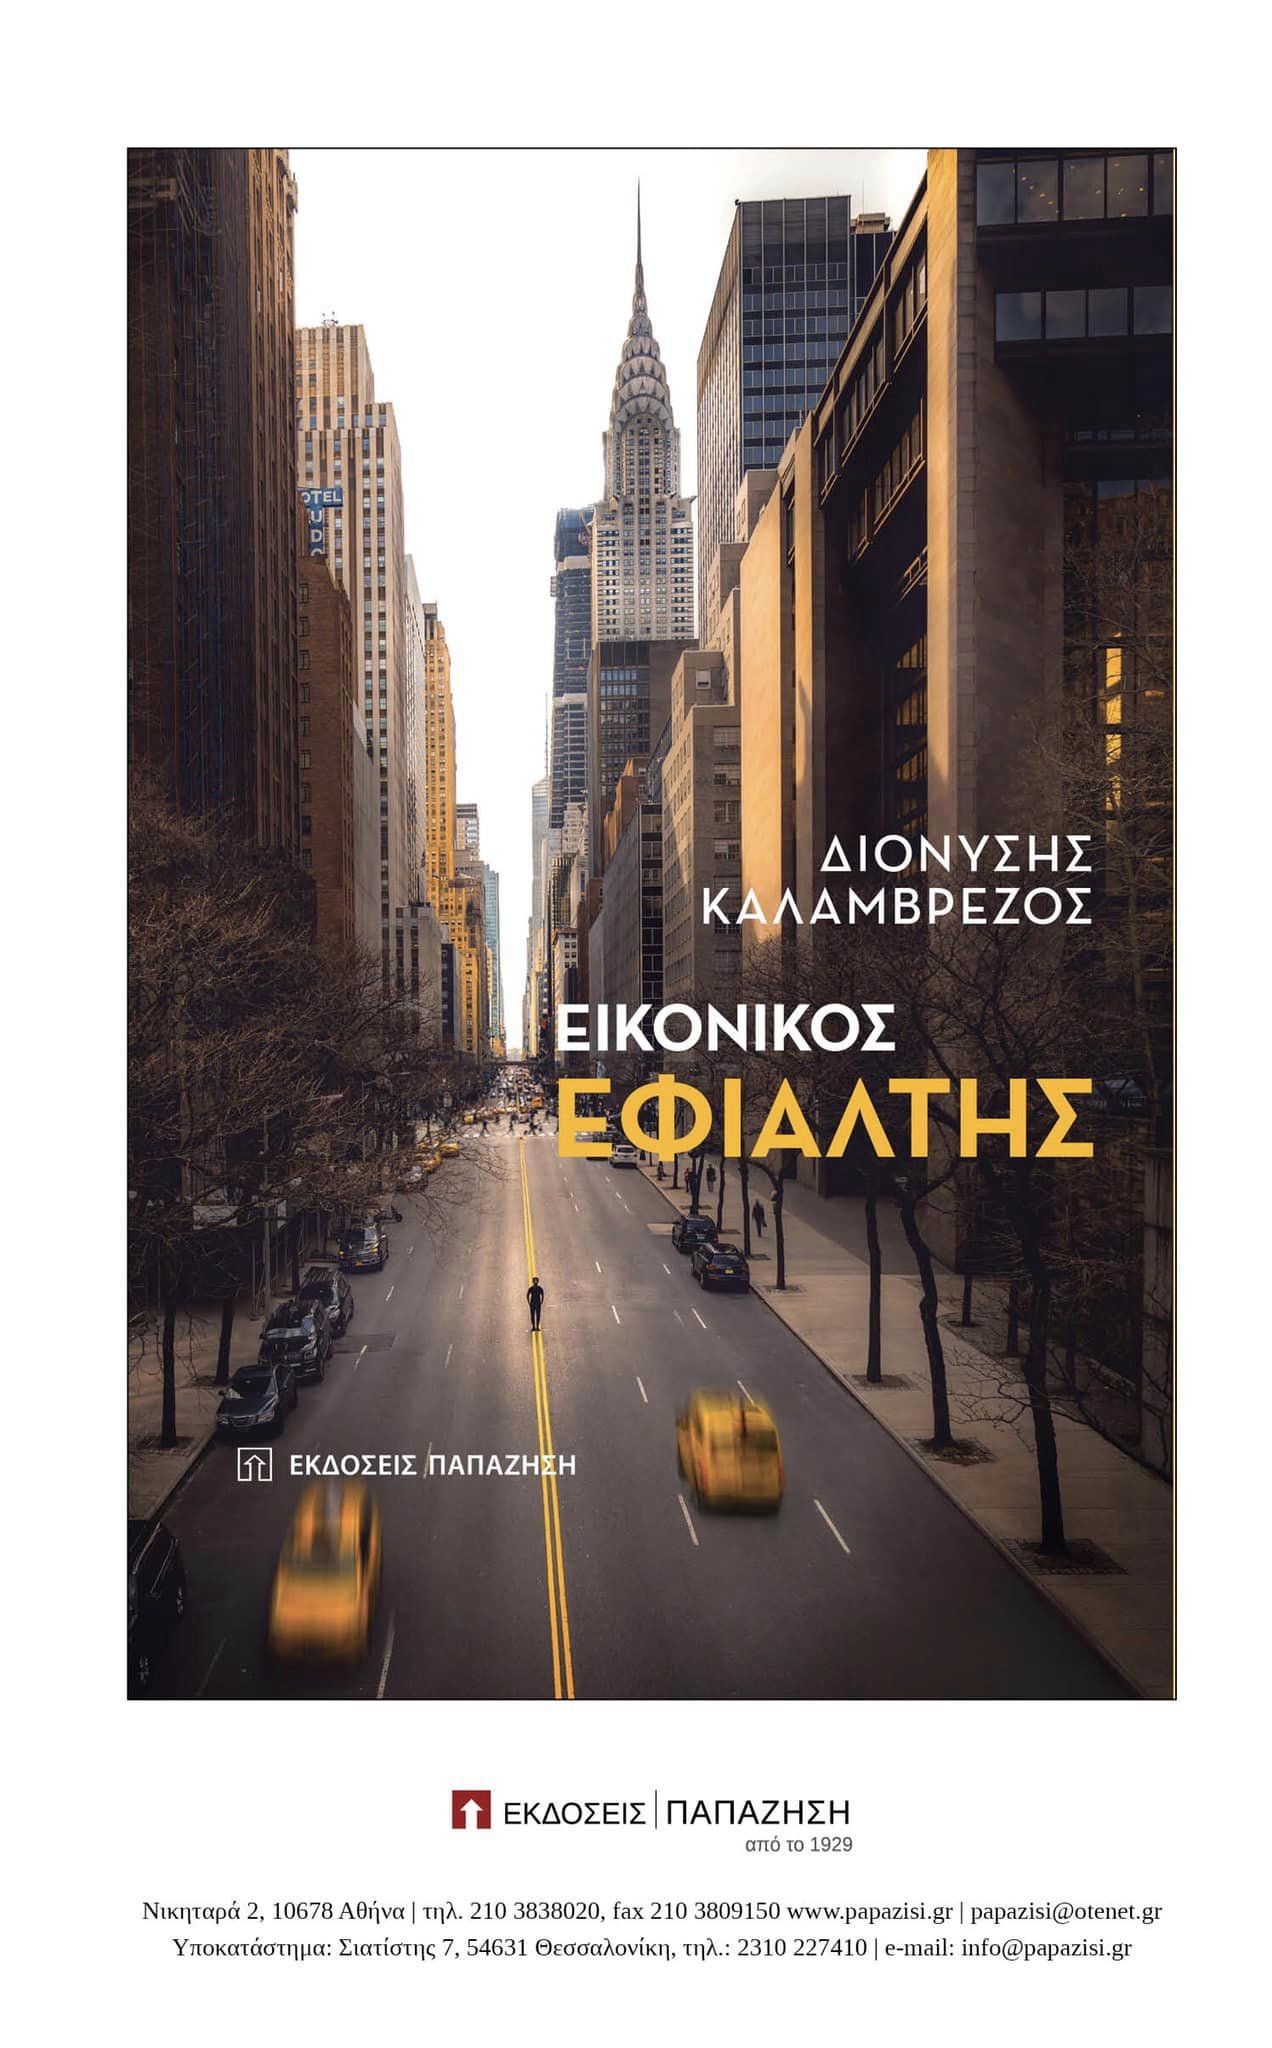 Ο πρώην Πρέσβης της Ελλάδας στο Βέλγιο παρουσιάζει το βιβλίο του “Εικονικός Εφιάλτης” στην Αθήνα